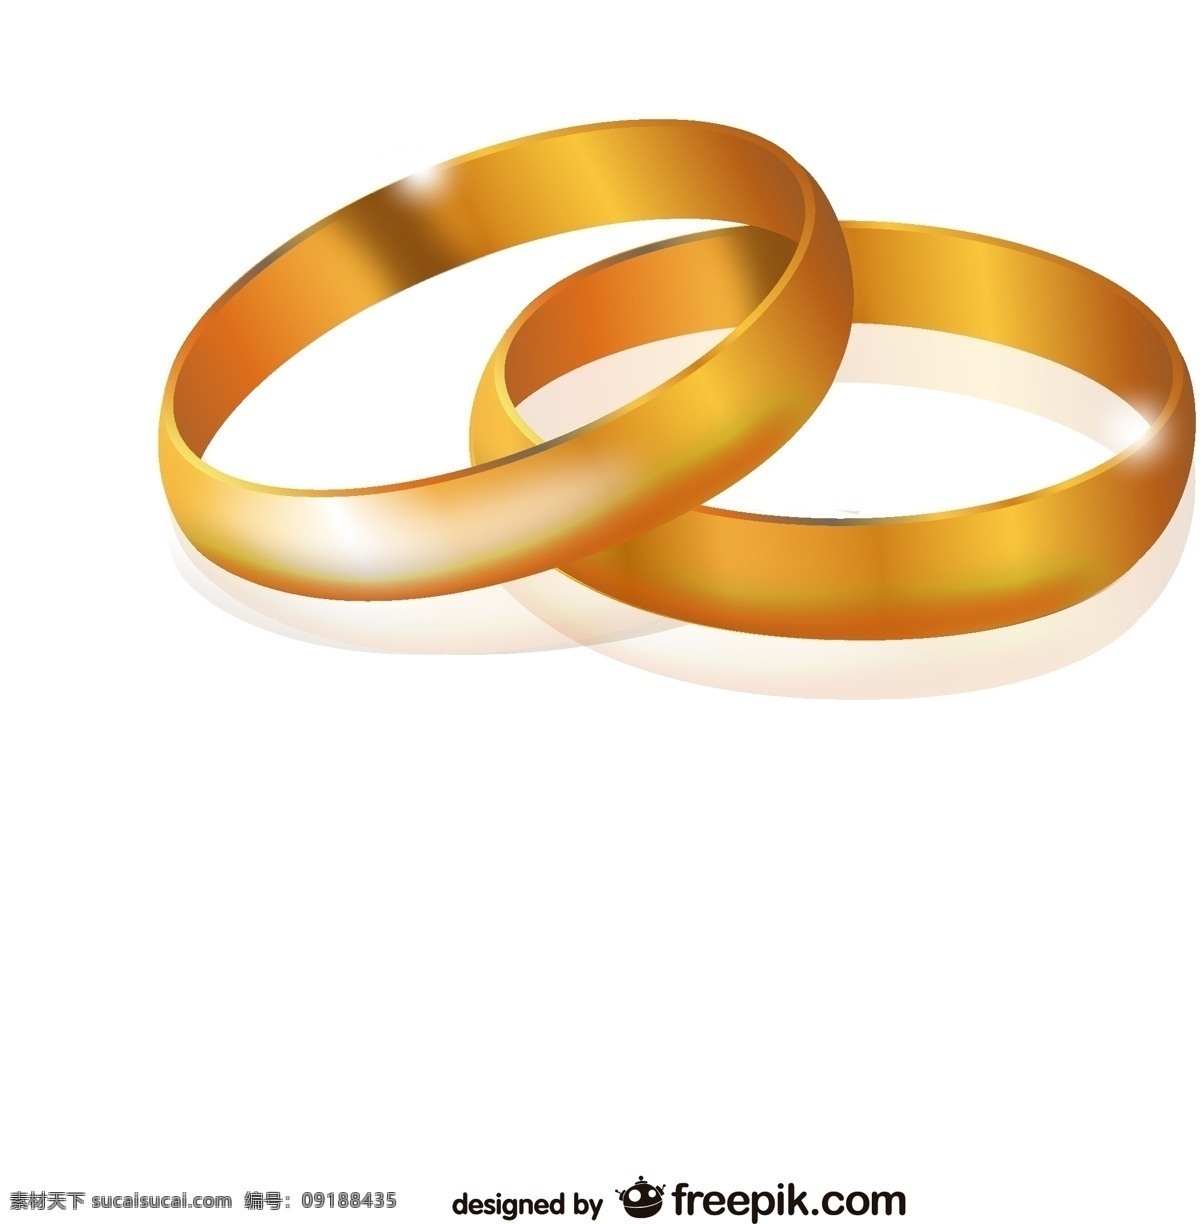 订婚戒指 结婚 爱情 黄金 情侣 结婚戒指 订婚 求婚 恋爱 白色